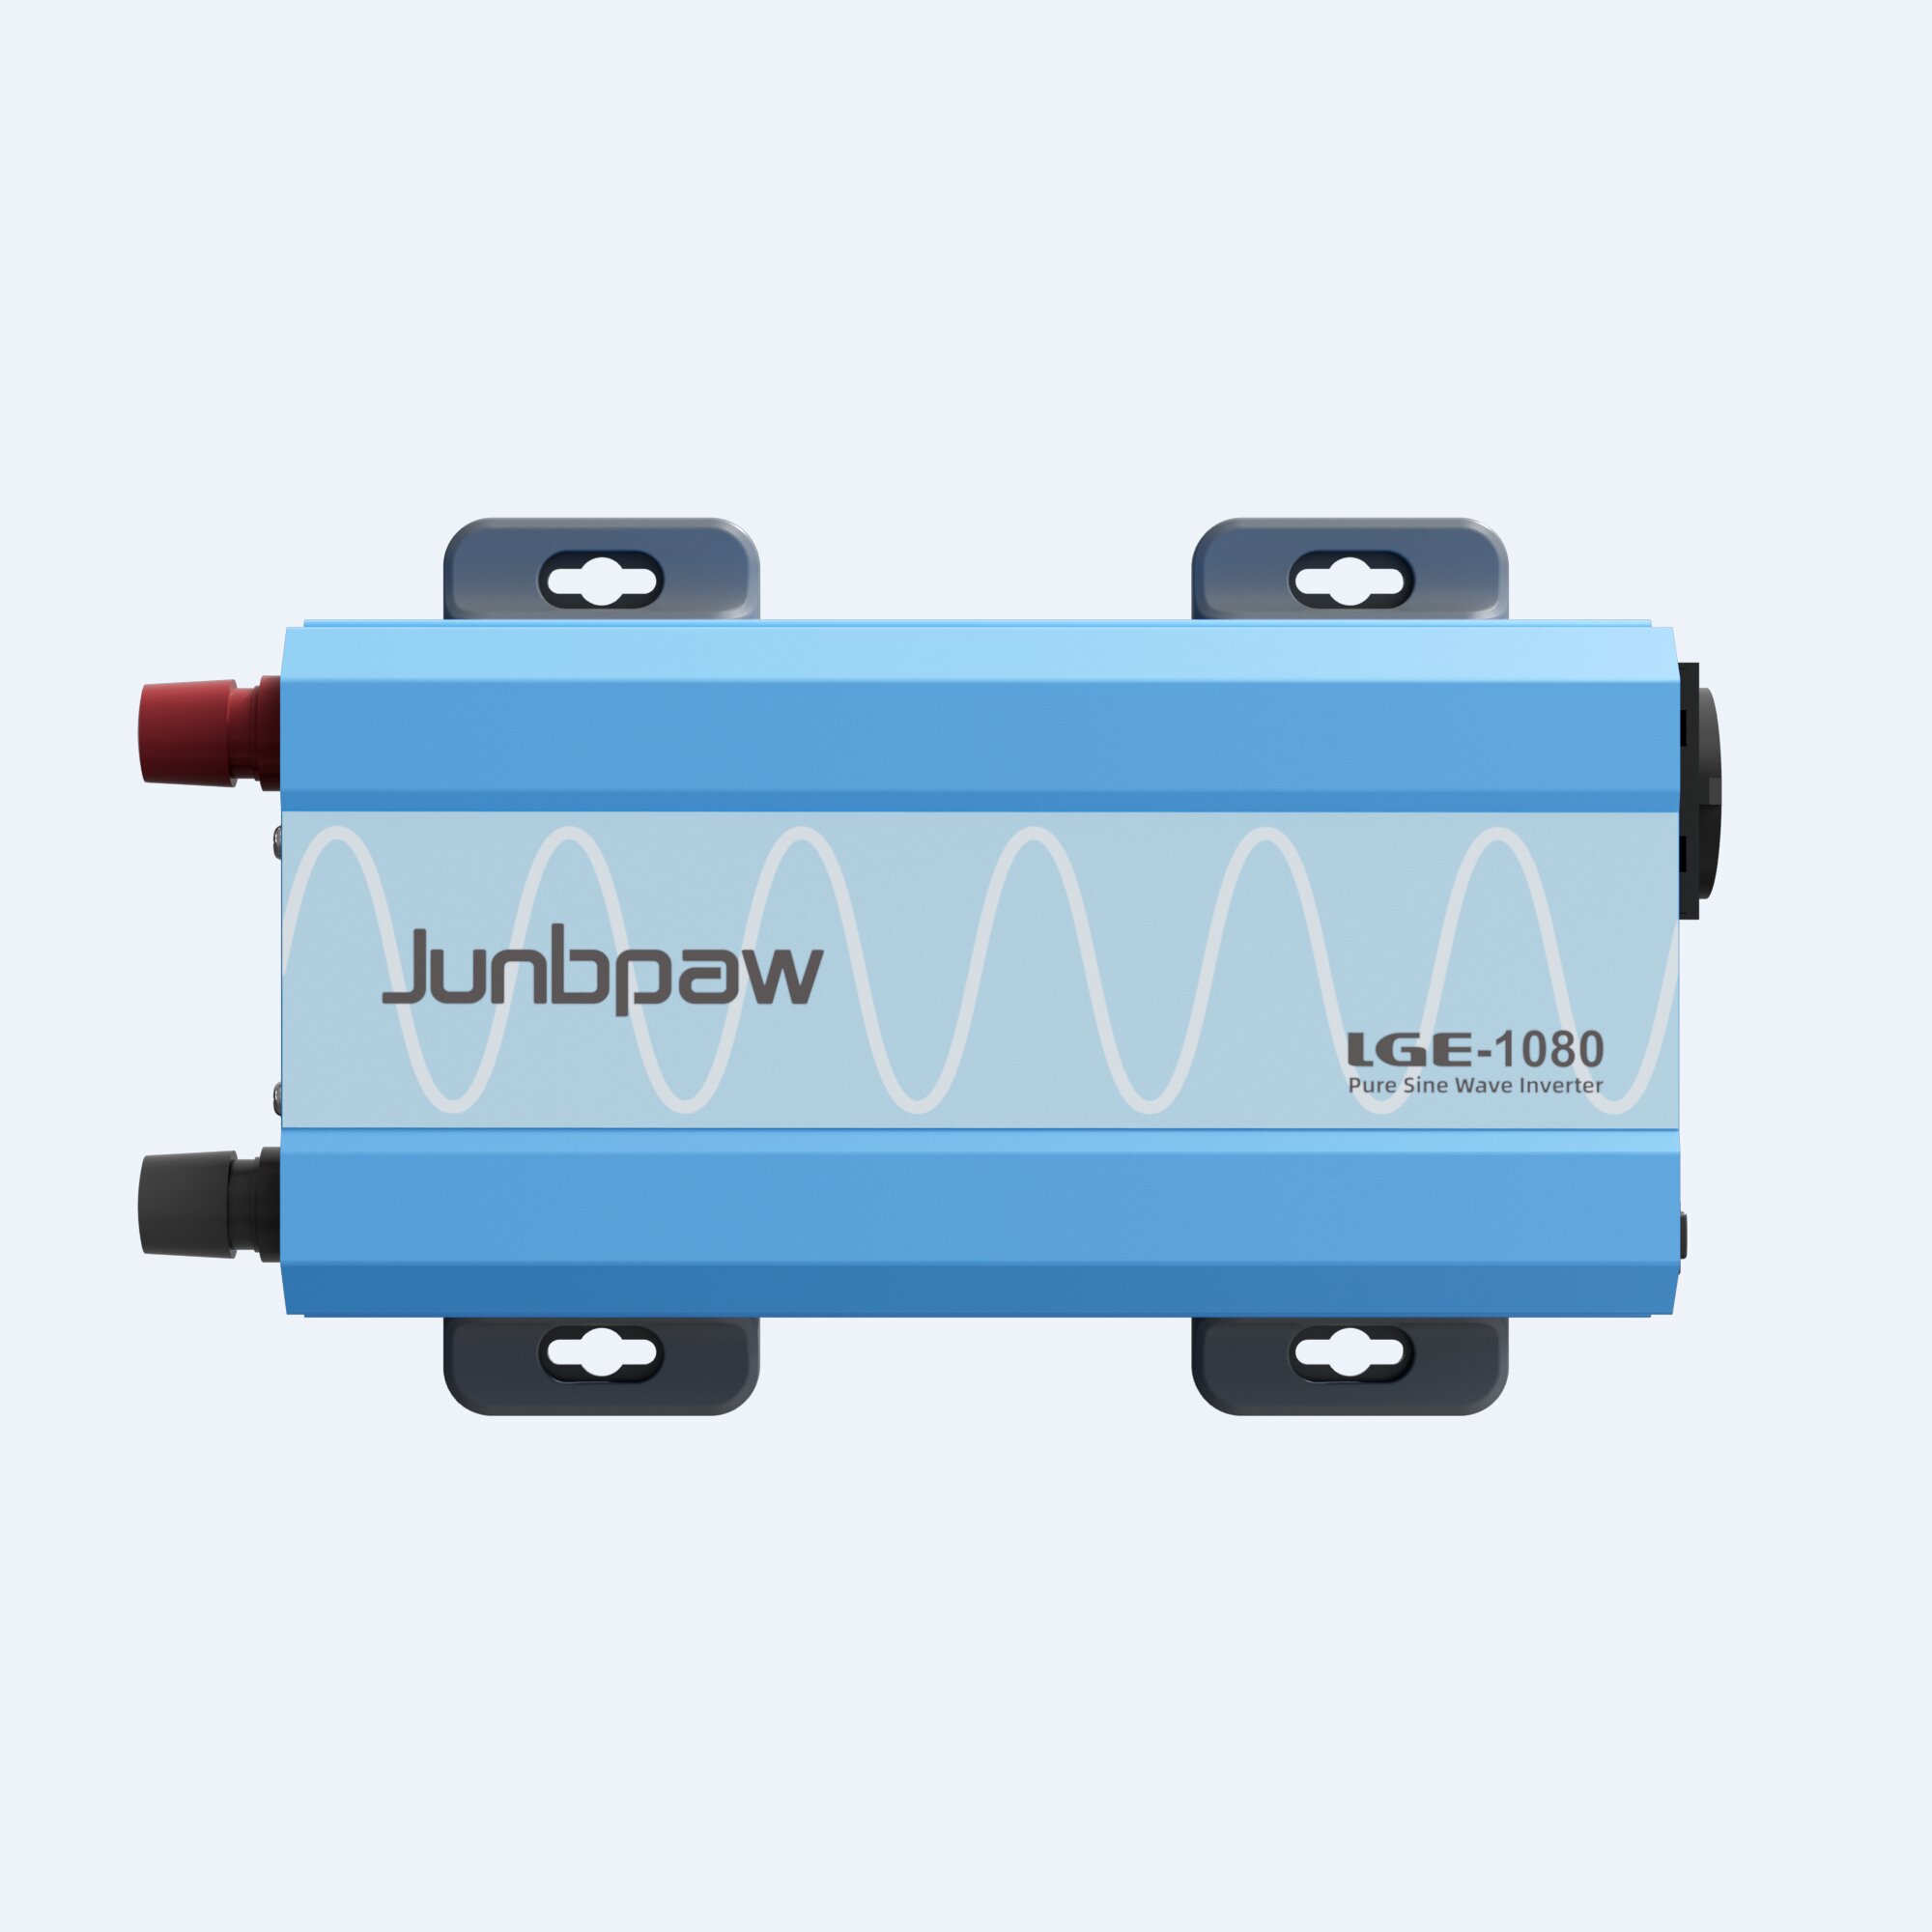 Junbpaw 1000W 12V Pure Sine Wave Inverter